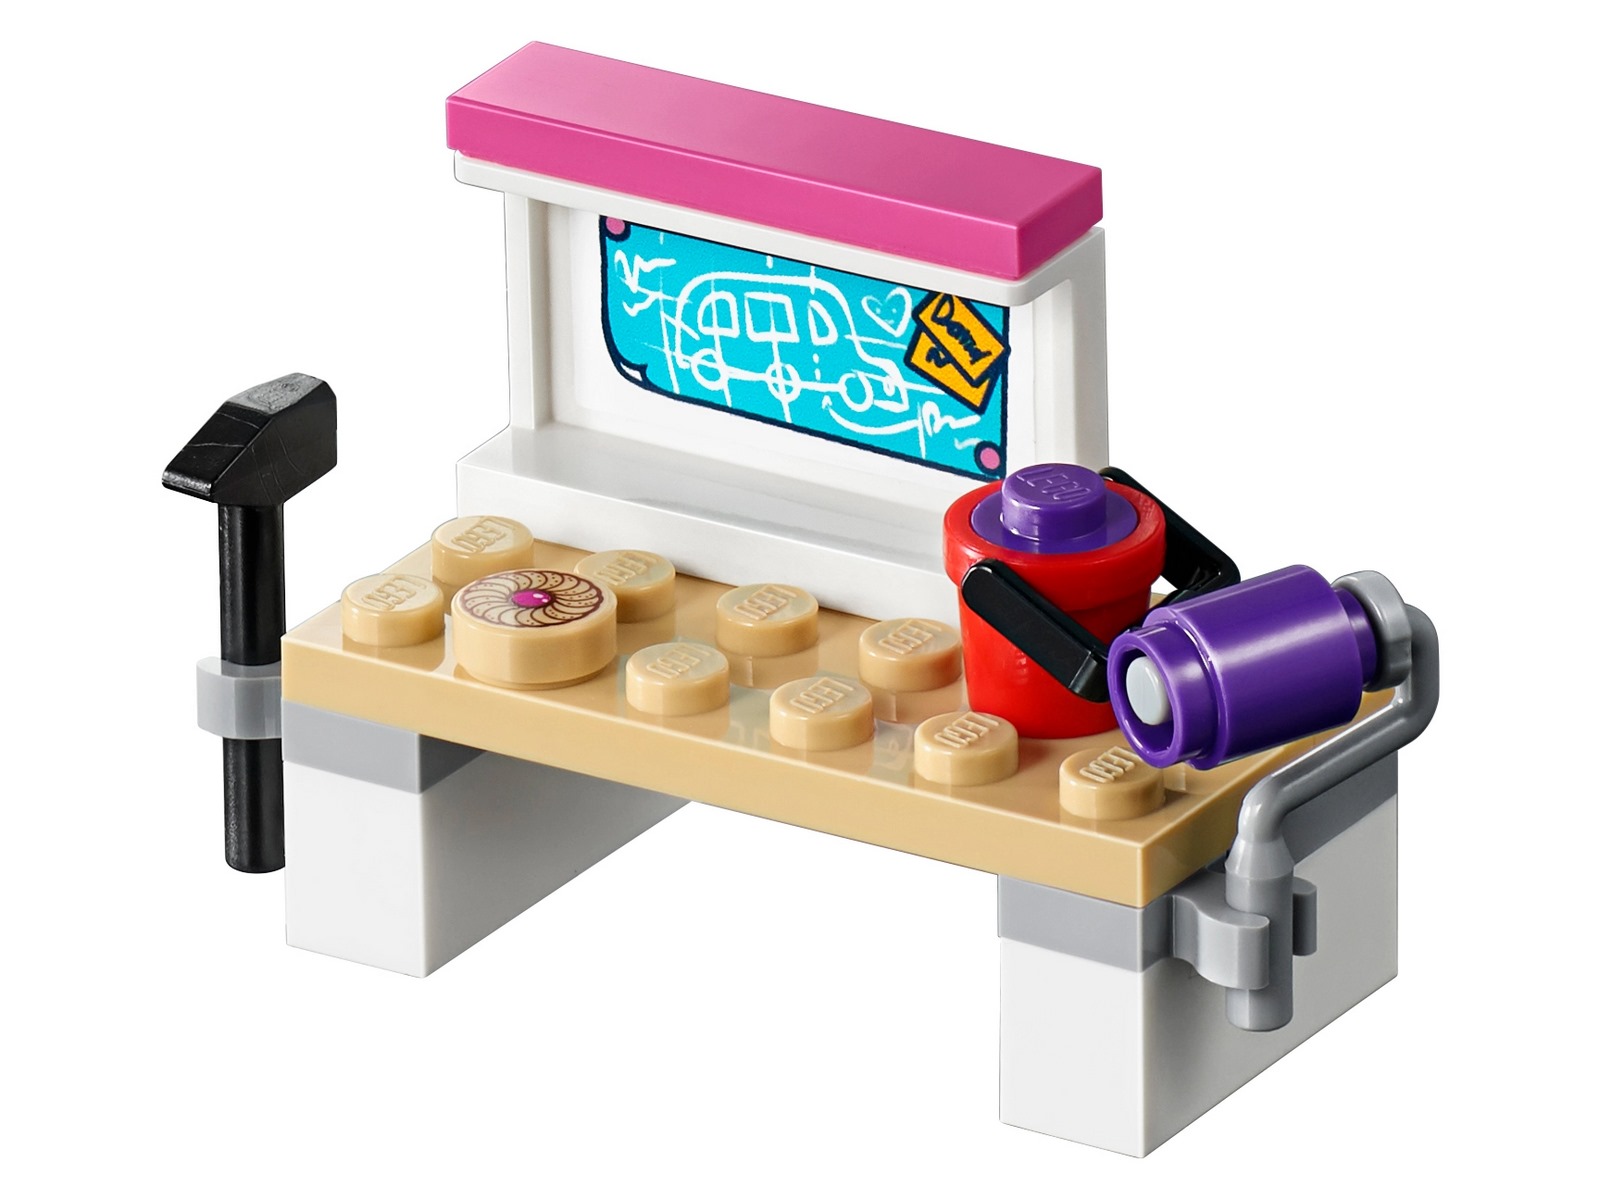 Конструктор LEGO Friends «Автобус для друзей» 41395 / 778 деталей